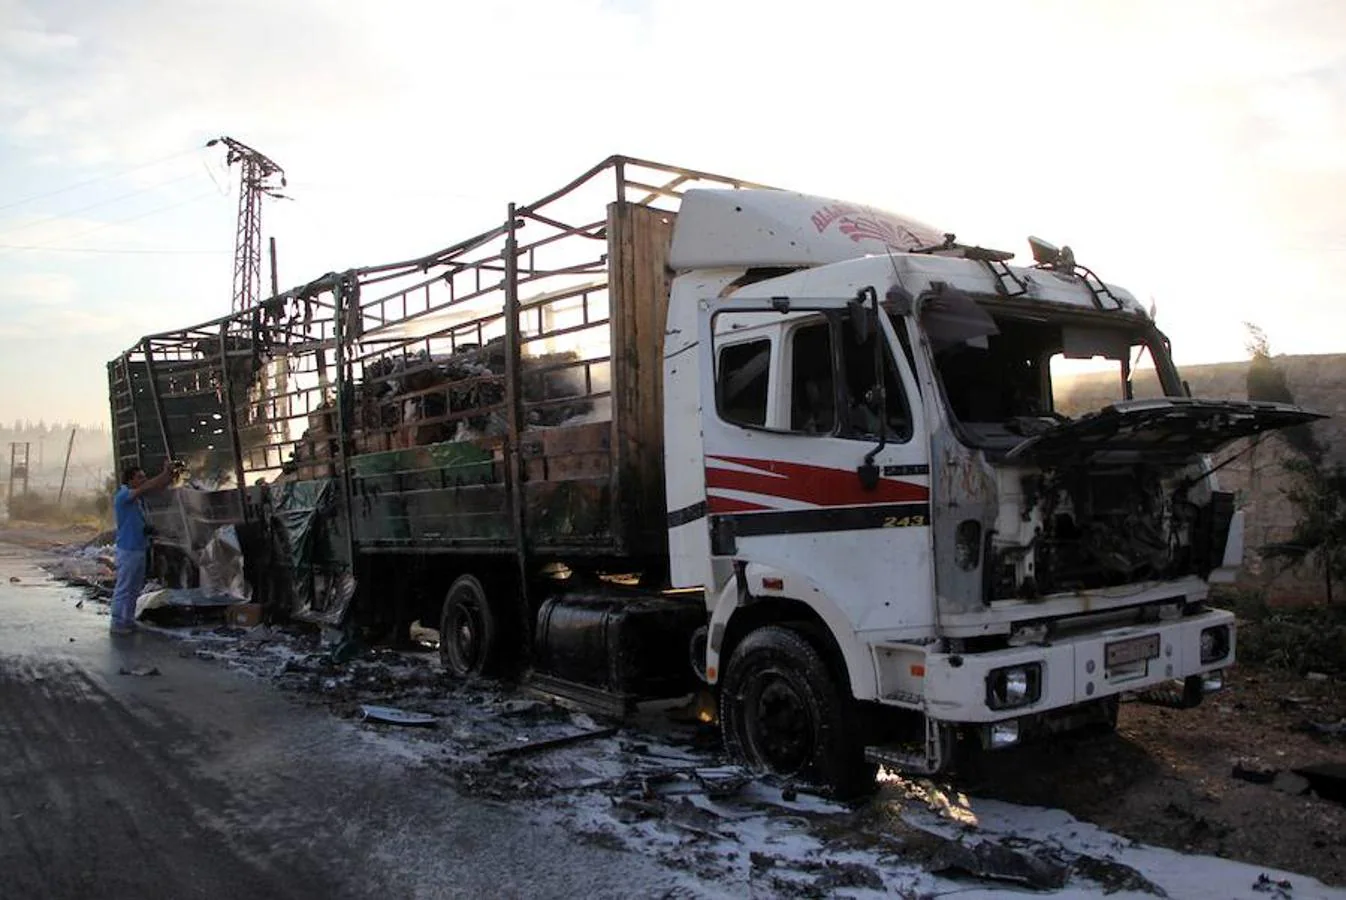 La organización también precisó que la mayoría de esos fallecidos eran conductores de los camiones de esa caravana humanitaria y un empleado de la Media Luna Roja Siria. Según señala la agencia Reuters, el ataque podría haber sido provocado por las fuerzas armadas de Rusia o Siria